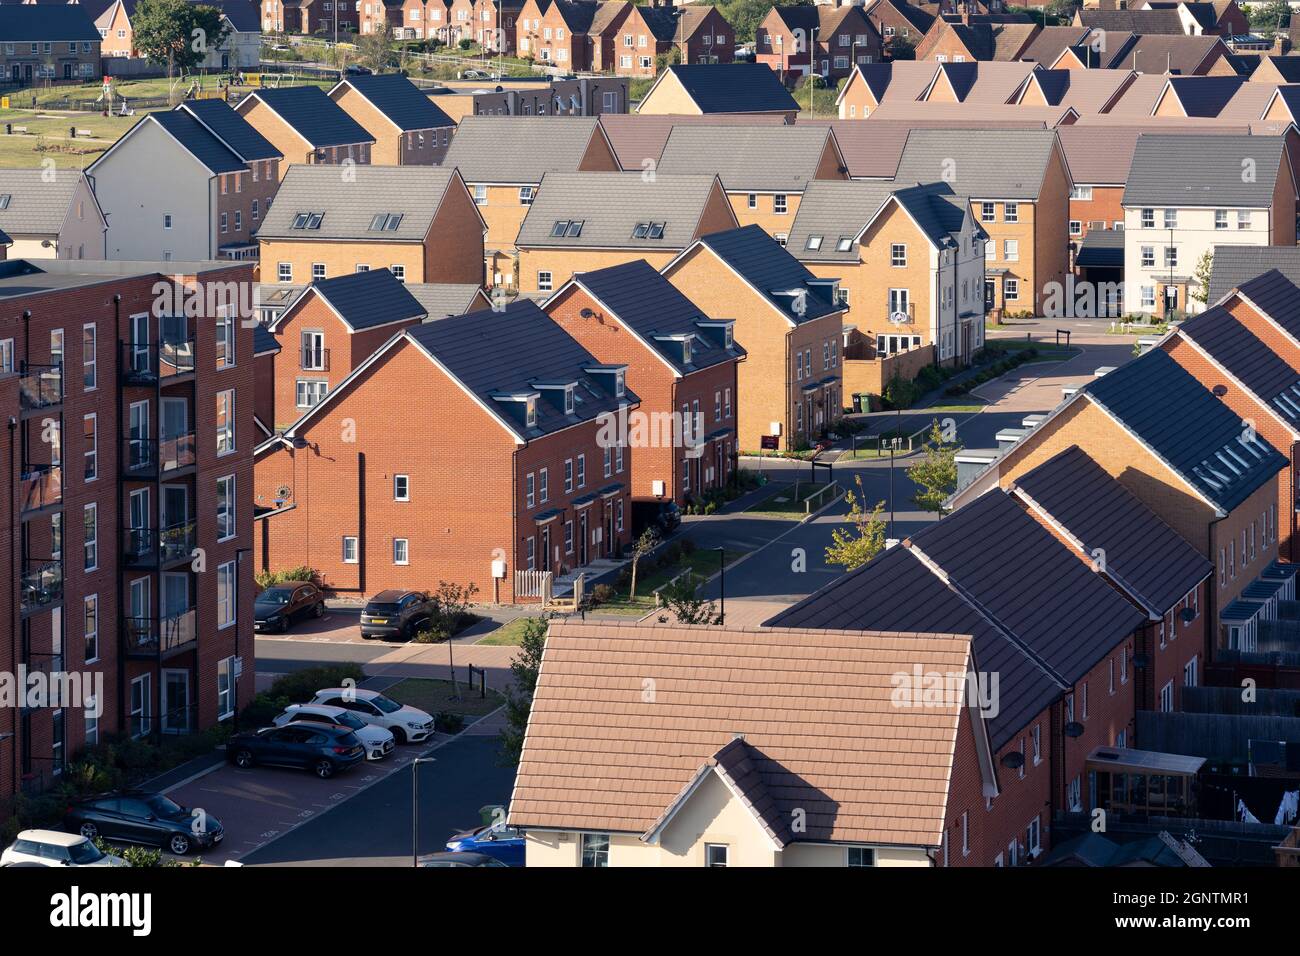 Vue aérienne sur des maisons semi-individuelles et des blocs d'appartements dans le domaine de Chapel Gate à Basingstoke, Royaume-Uni. Concept: Location, marché de location, marché immobilier Banque D'Images